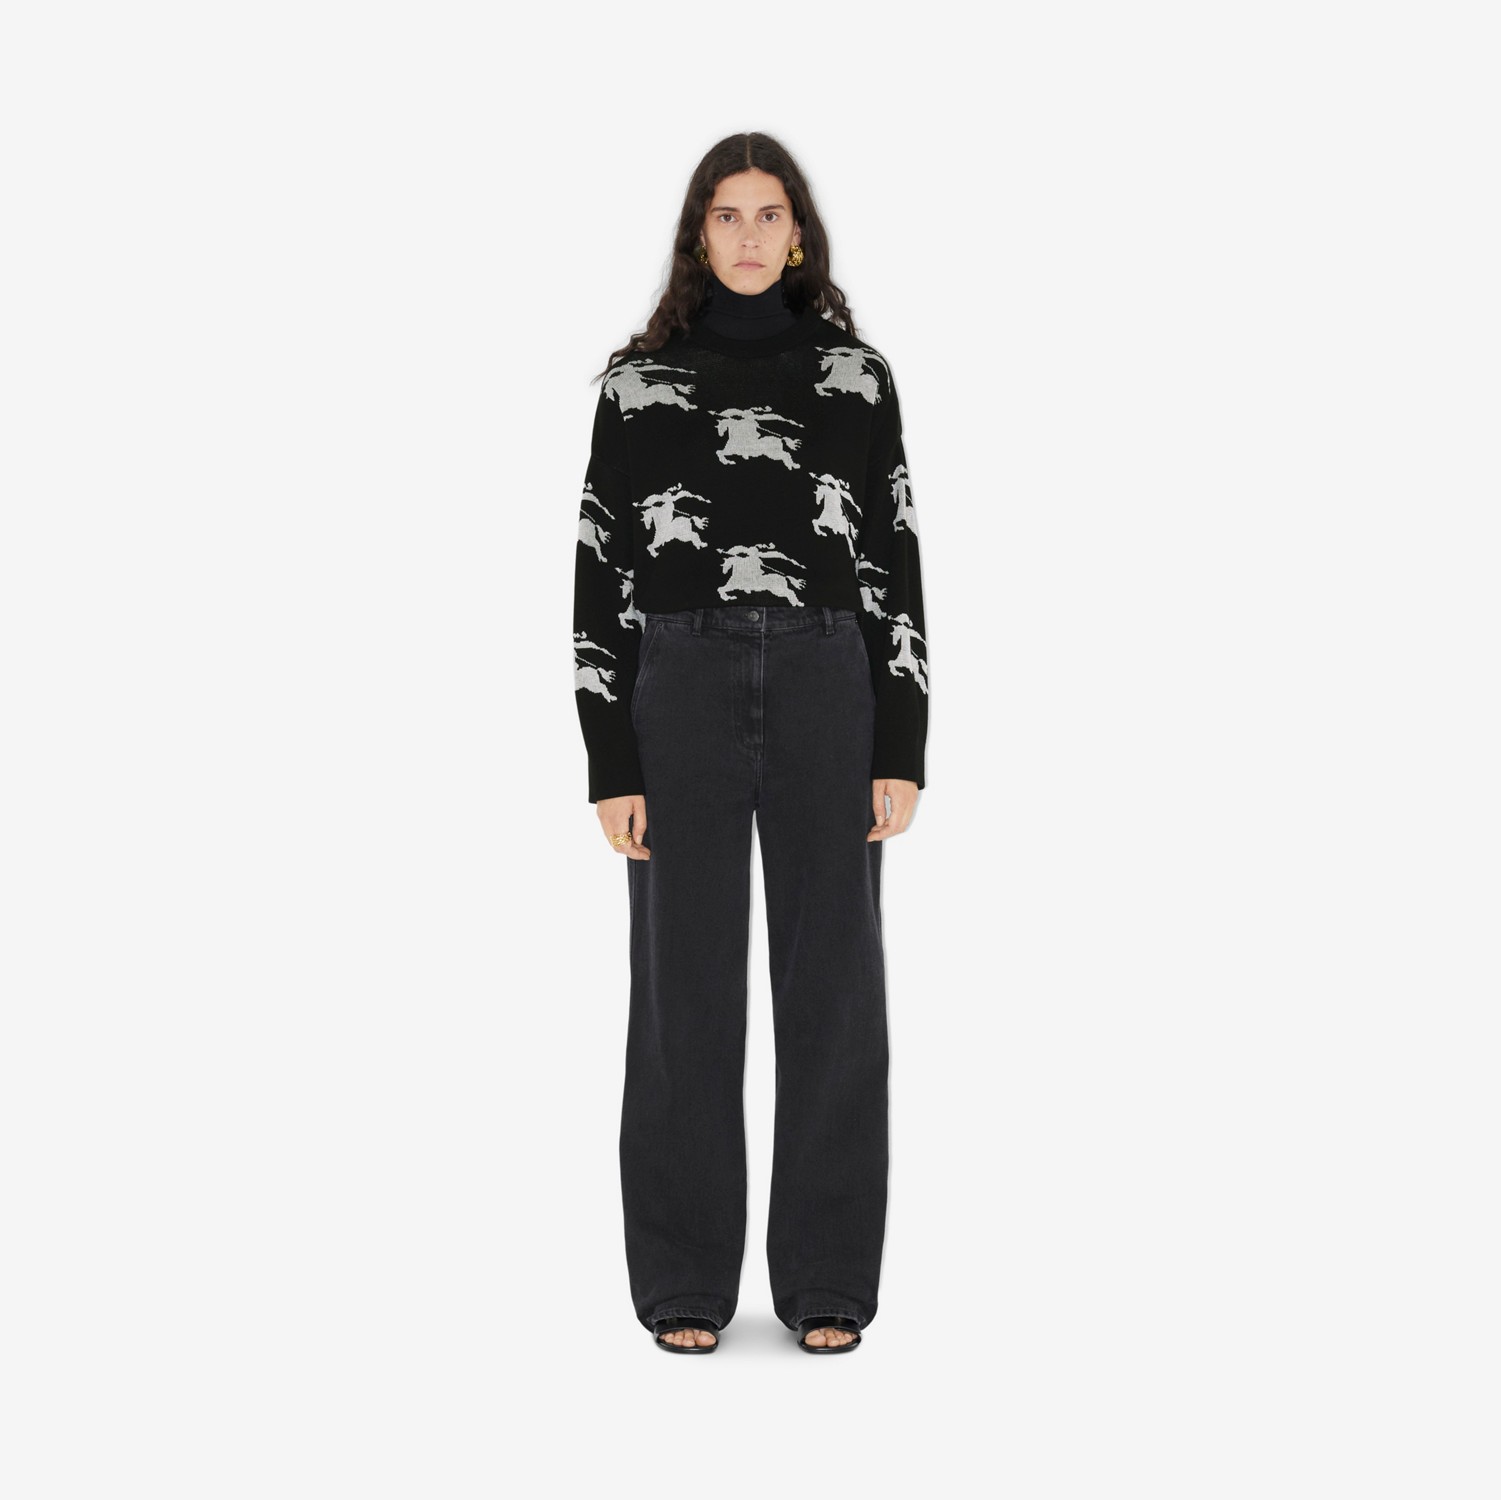 Pullover aus Baumwolle und Seide mit EKD-Motiv in Jacquard-Webung (Schwarz/weiß) - Damen | Burberry®